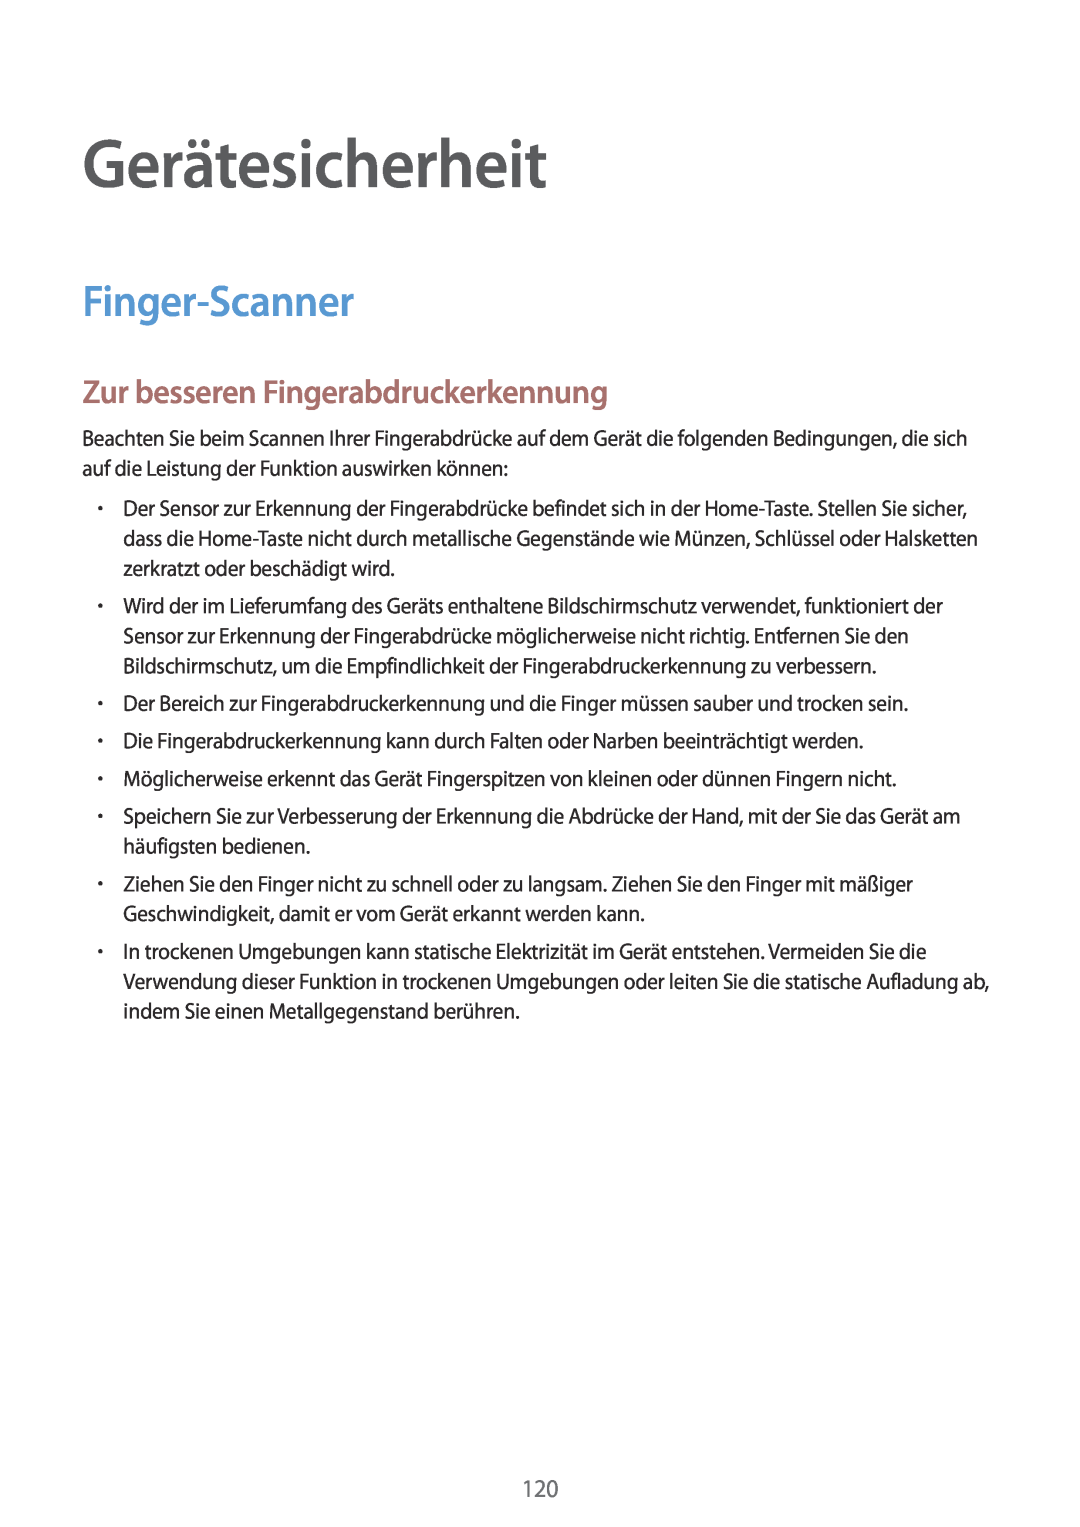 Samsung SM-G901FZDABAL, SM-G901FZKACOS manual Gerätesicherheit, Finger-Scanner, Zur besseren Fingerabdruckerkennung 